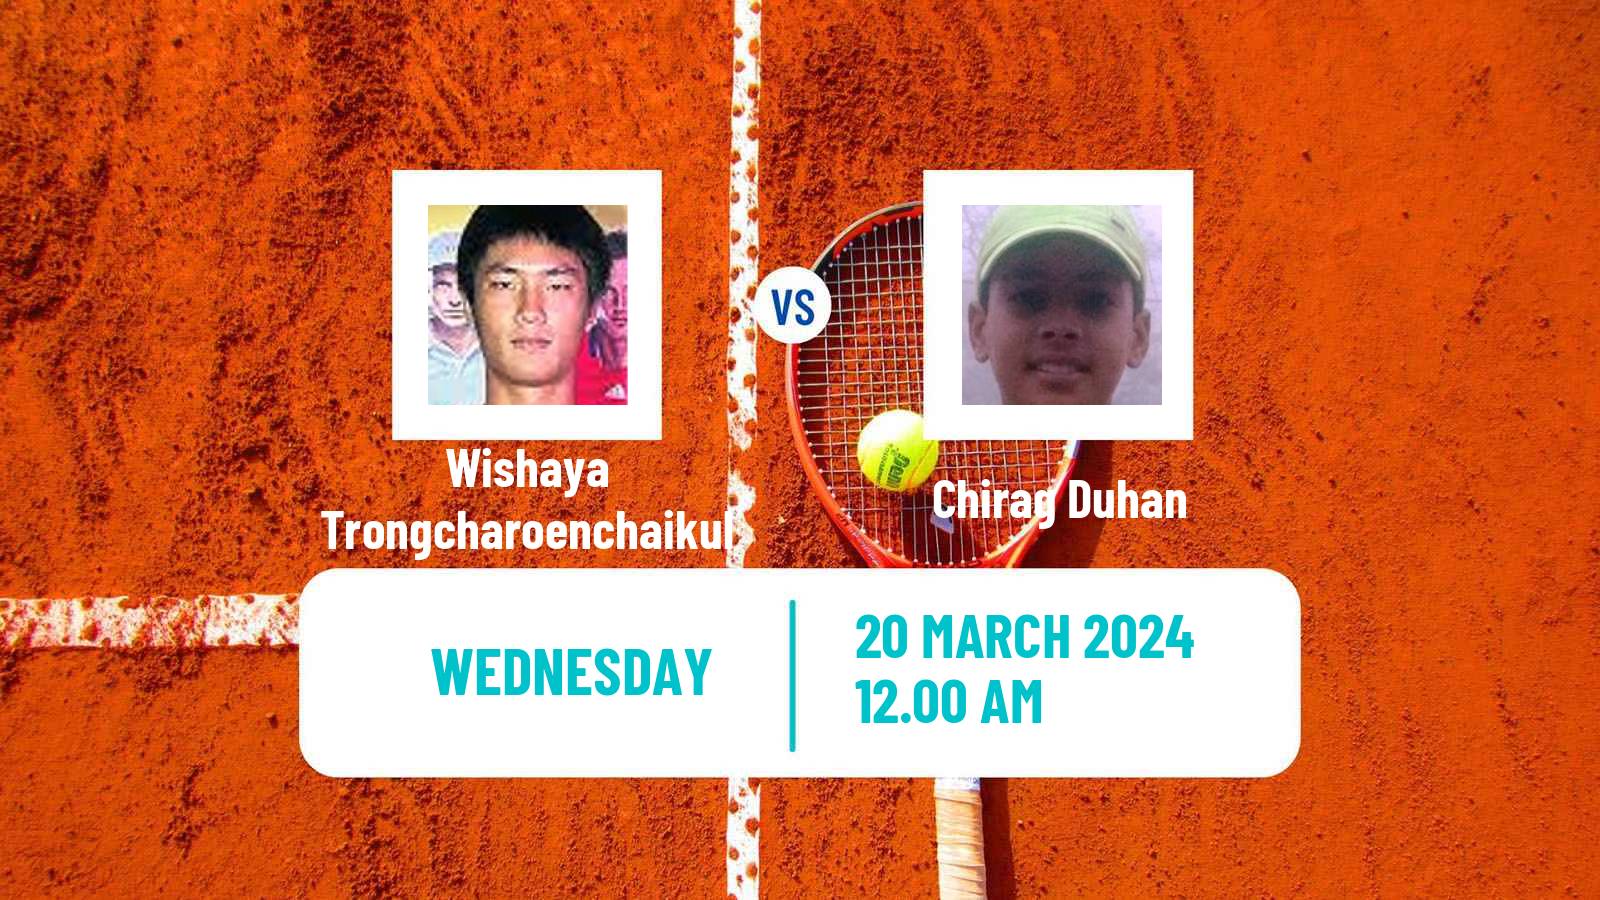 Tennis ITF M15 Chandigarh Men Wishaya Trongcharoenchaikul - Chirag Duhan